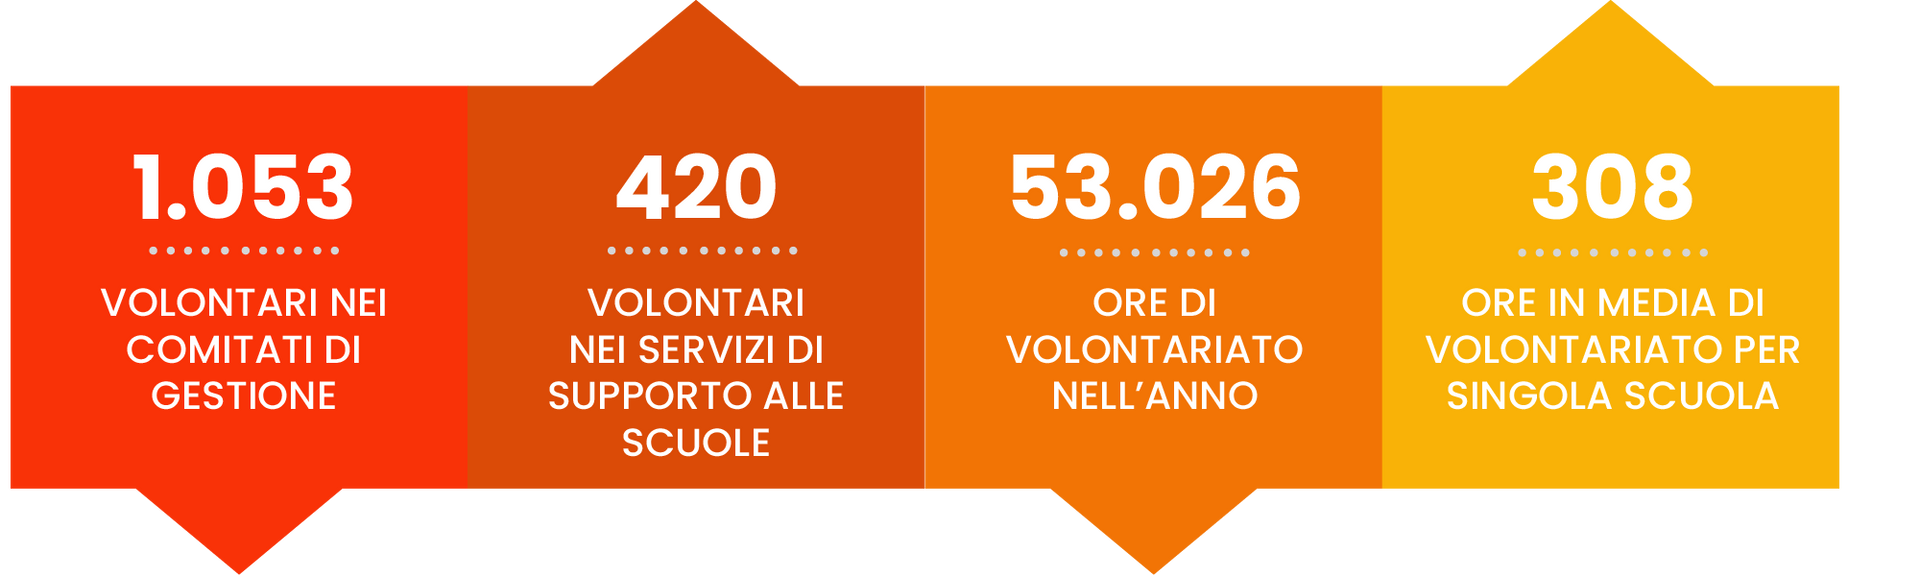 Un grafico che mostra il numero di volontari in Italia